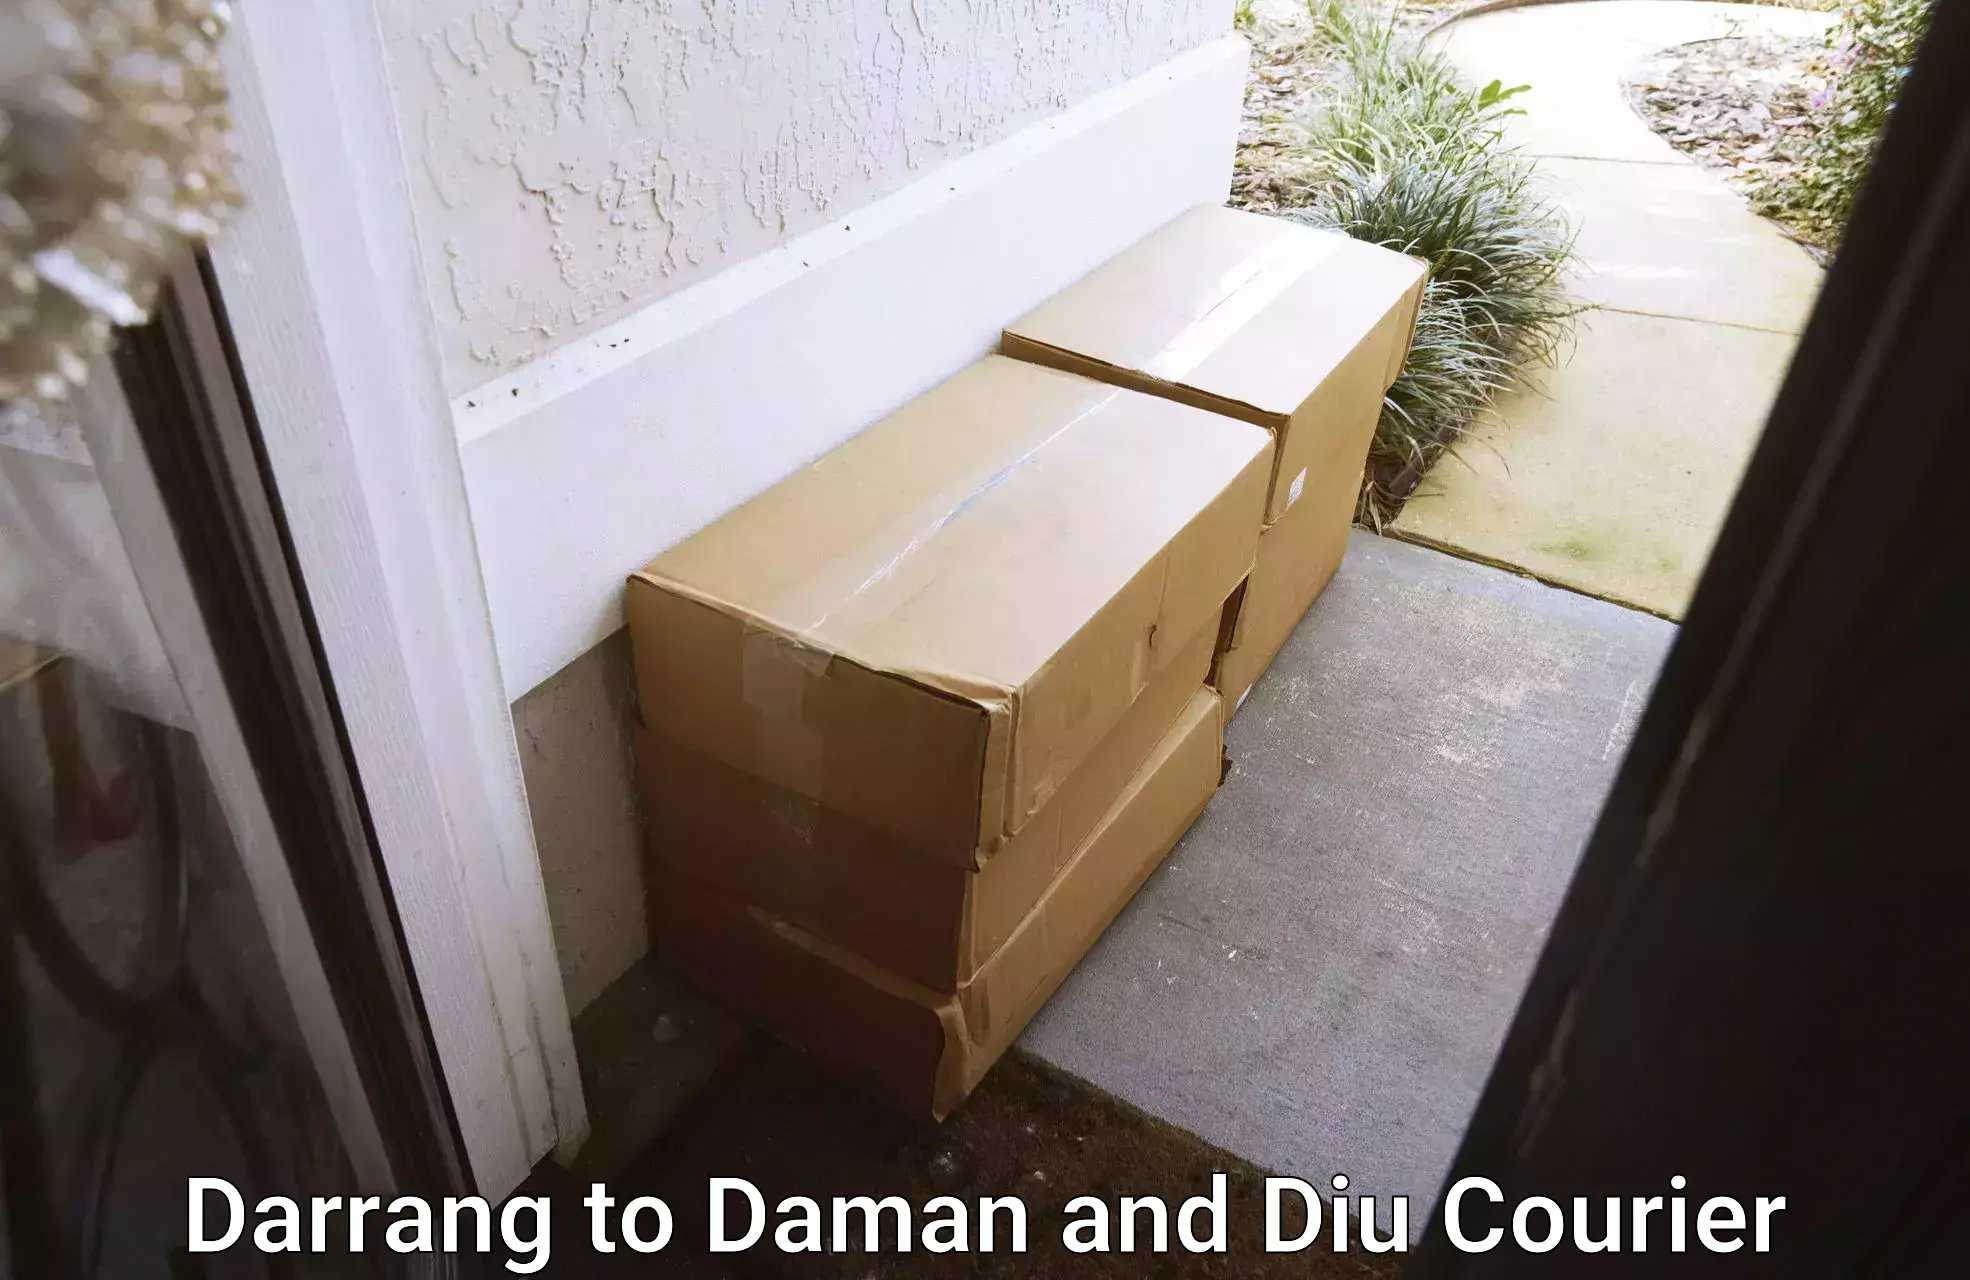 Bulk courier orders Darrang to Daman and Diu